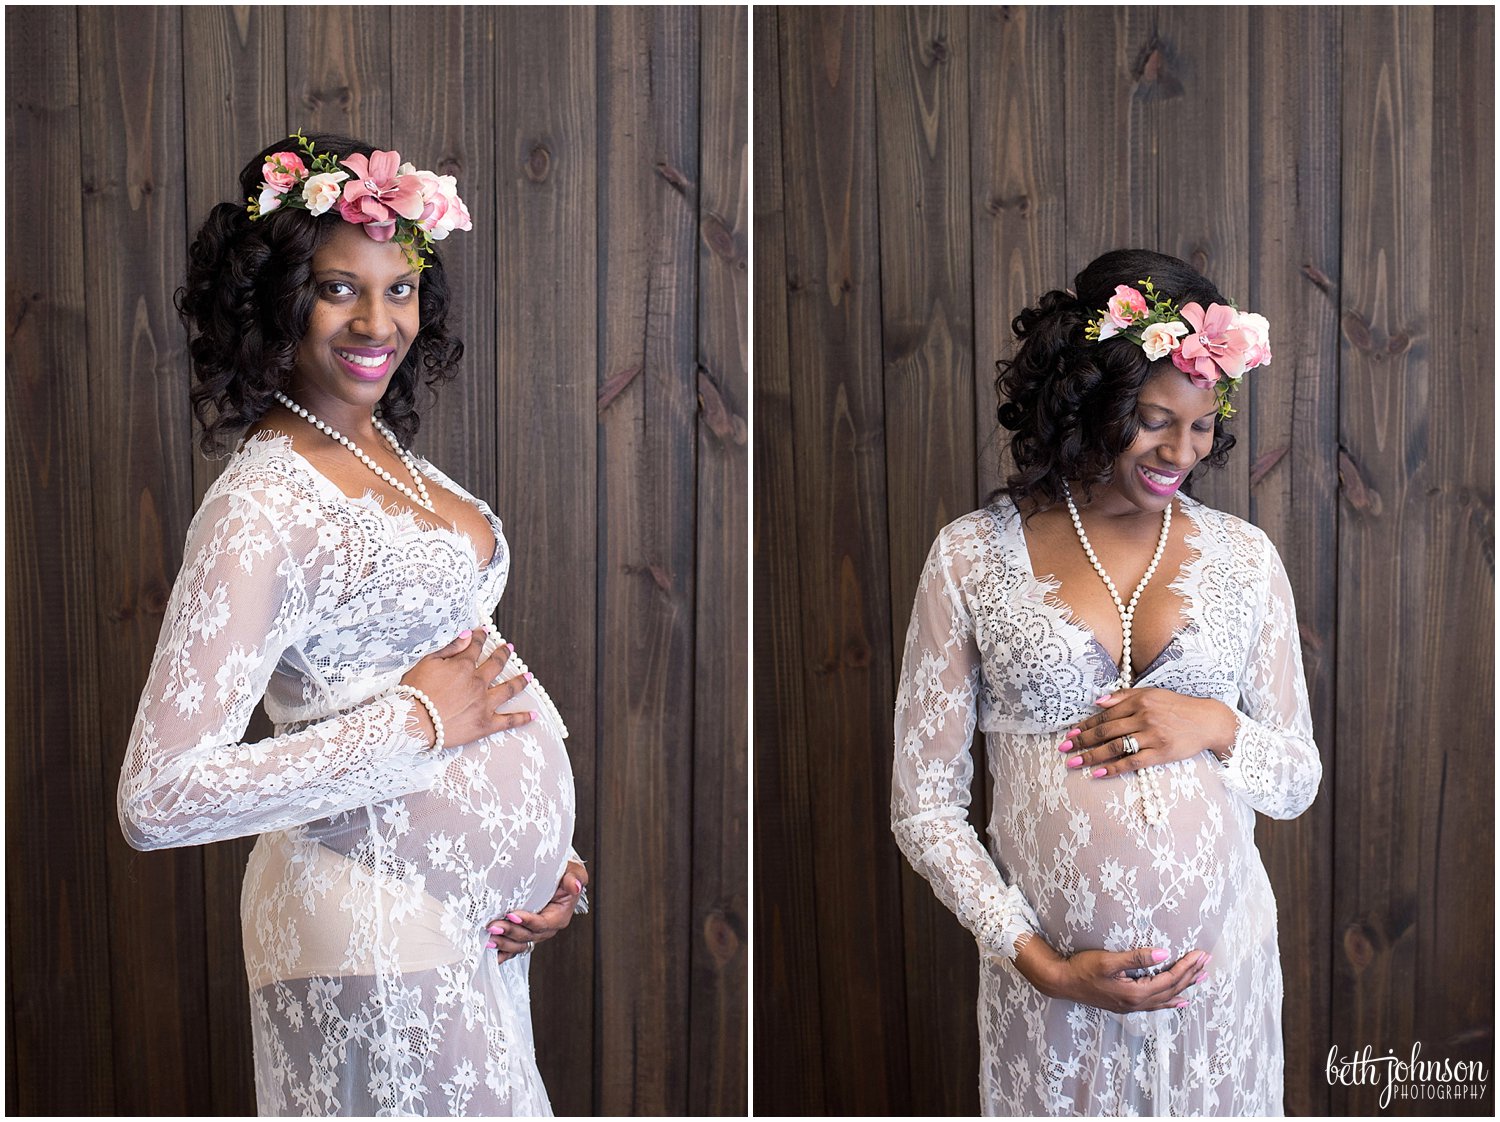 Tiffany | Tallahassee, FL Maternity Photography